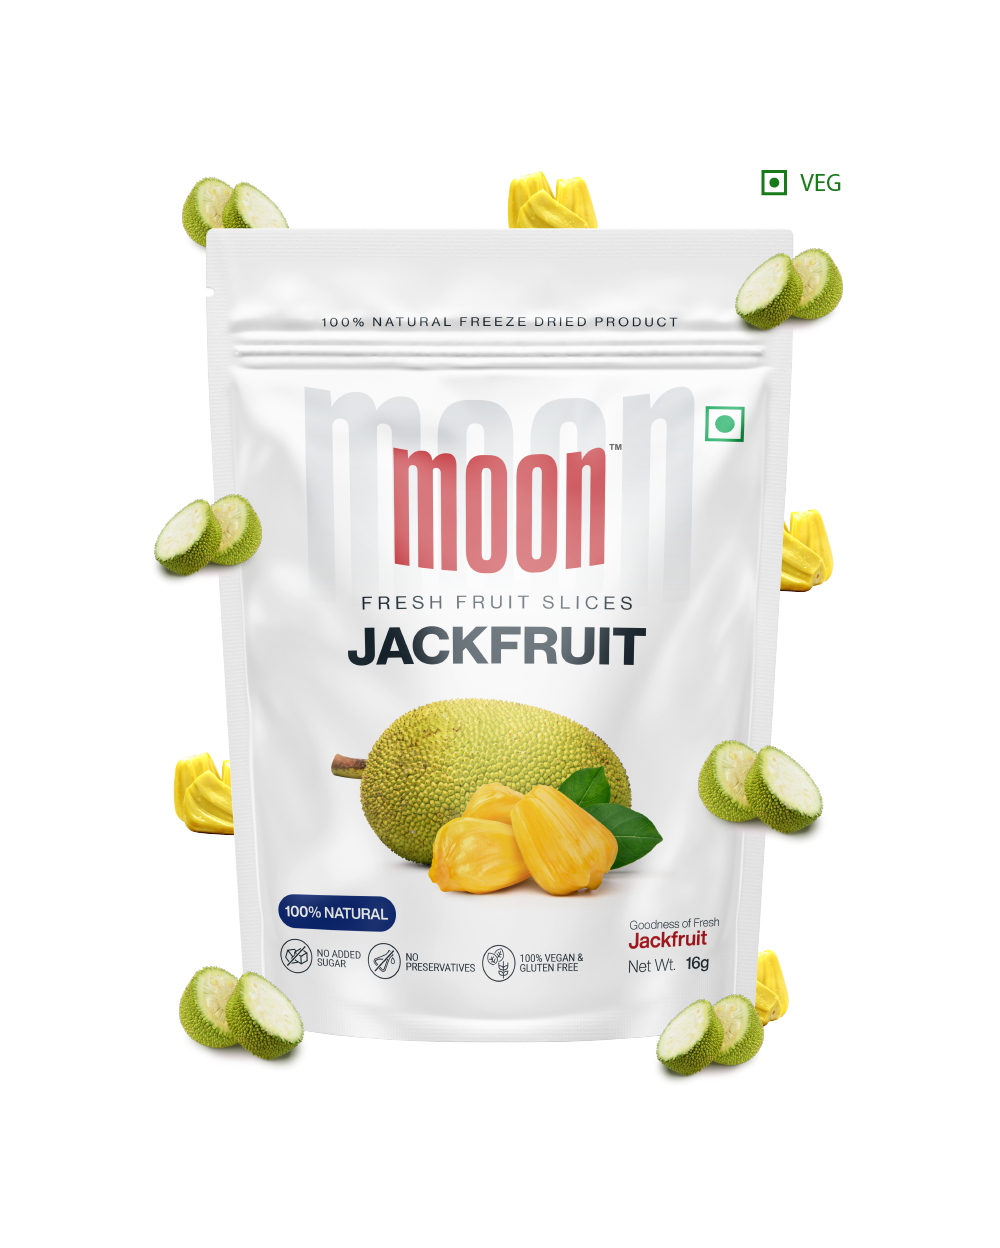 Moon Freeze Dried Jackfruit